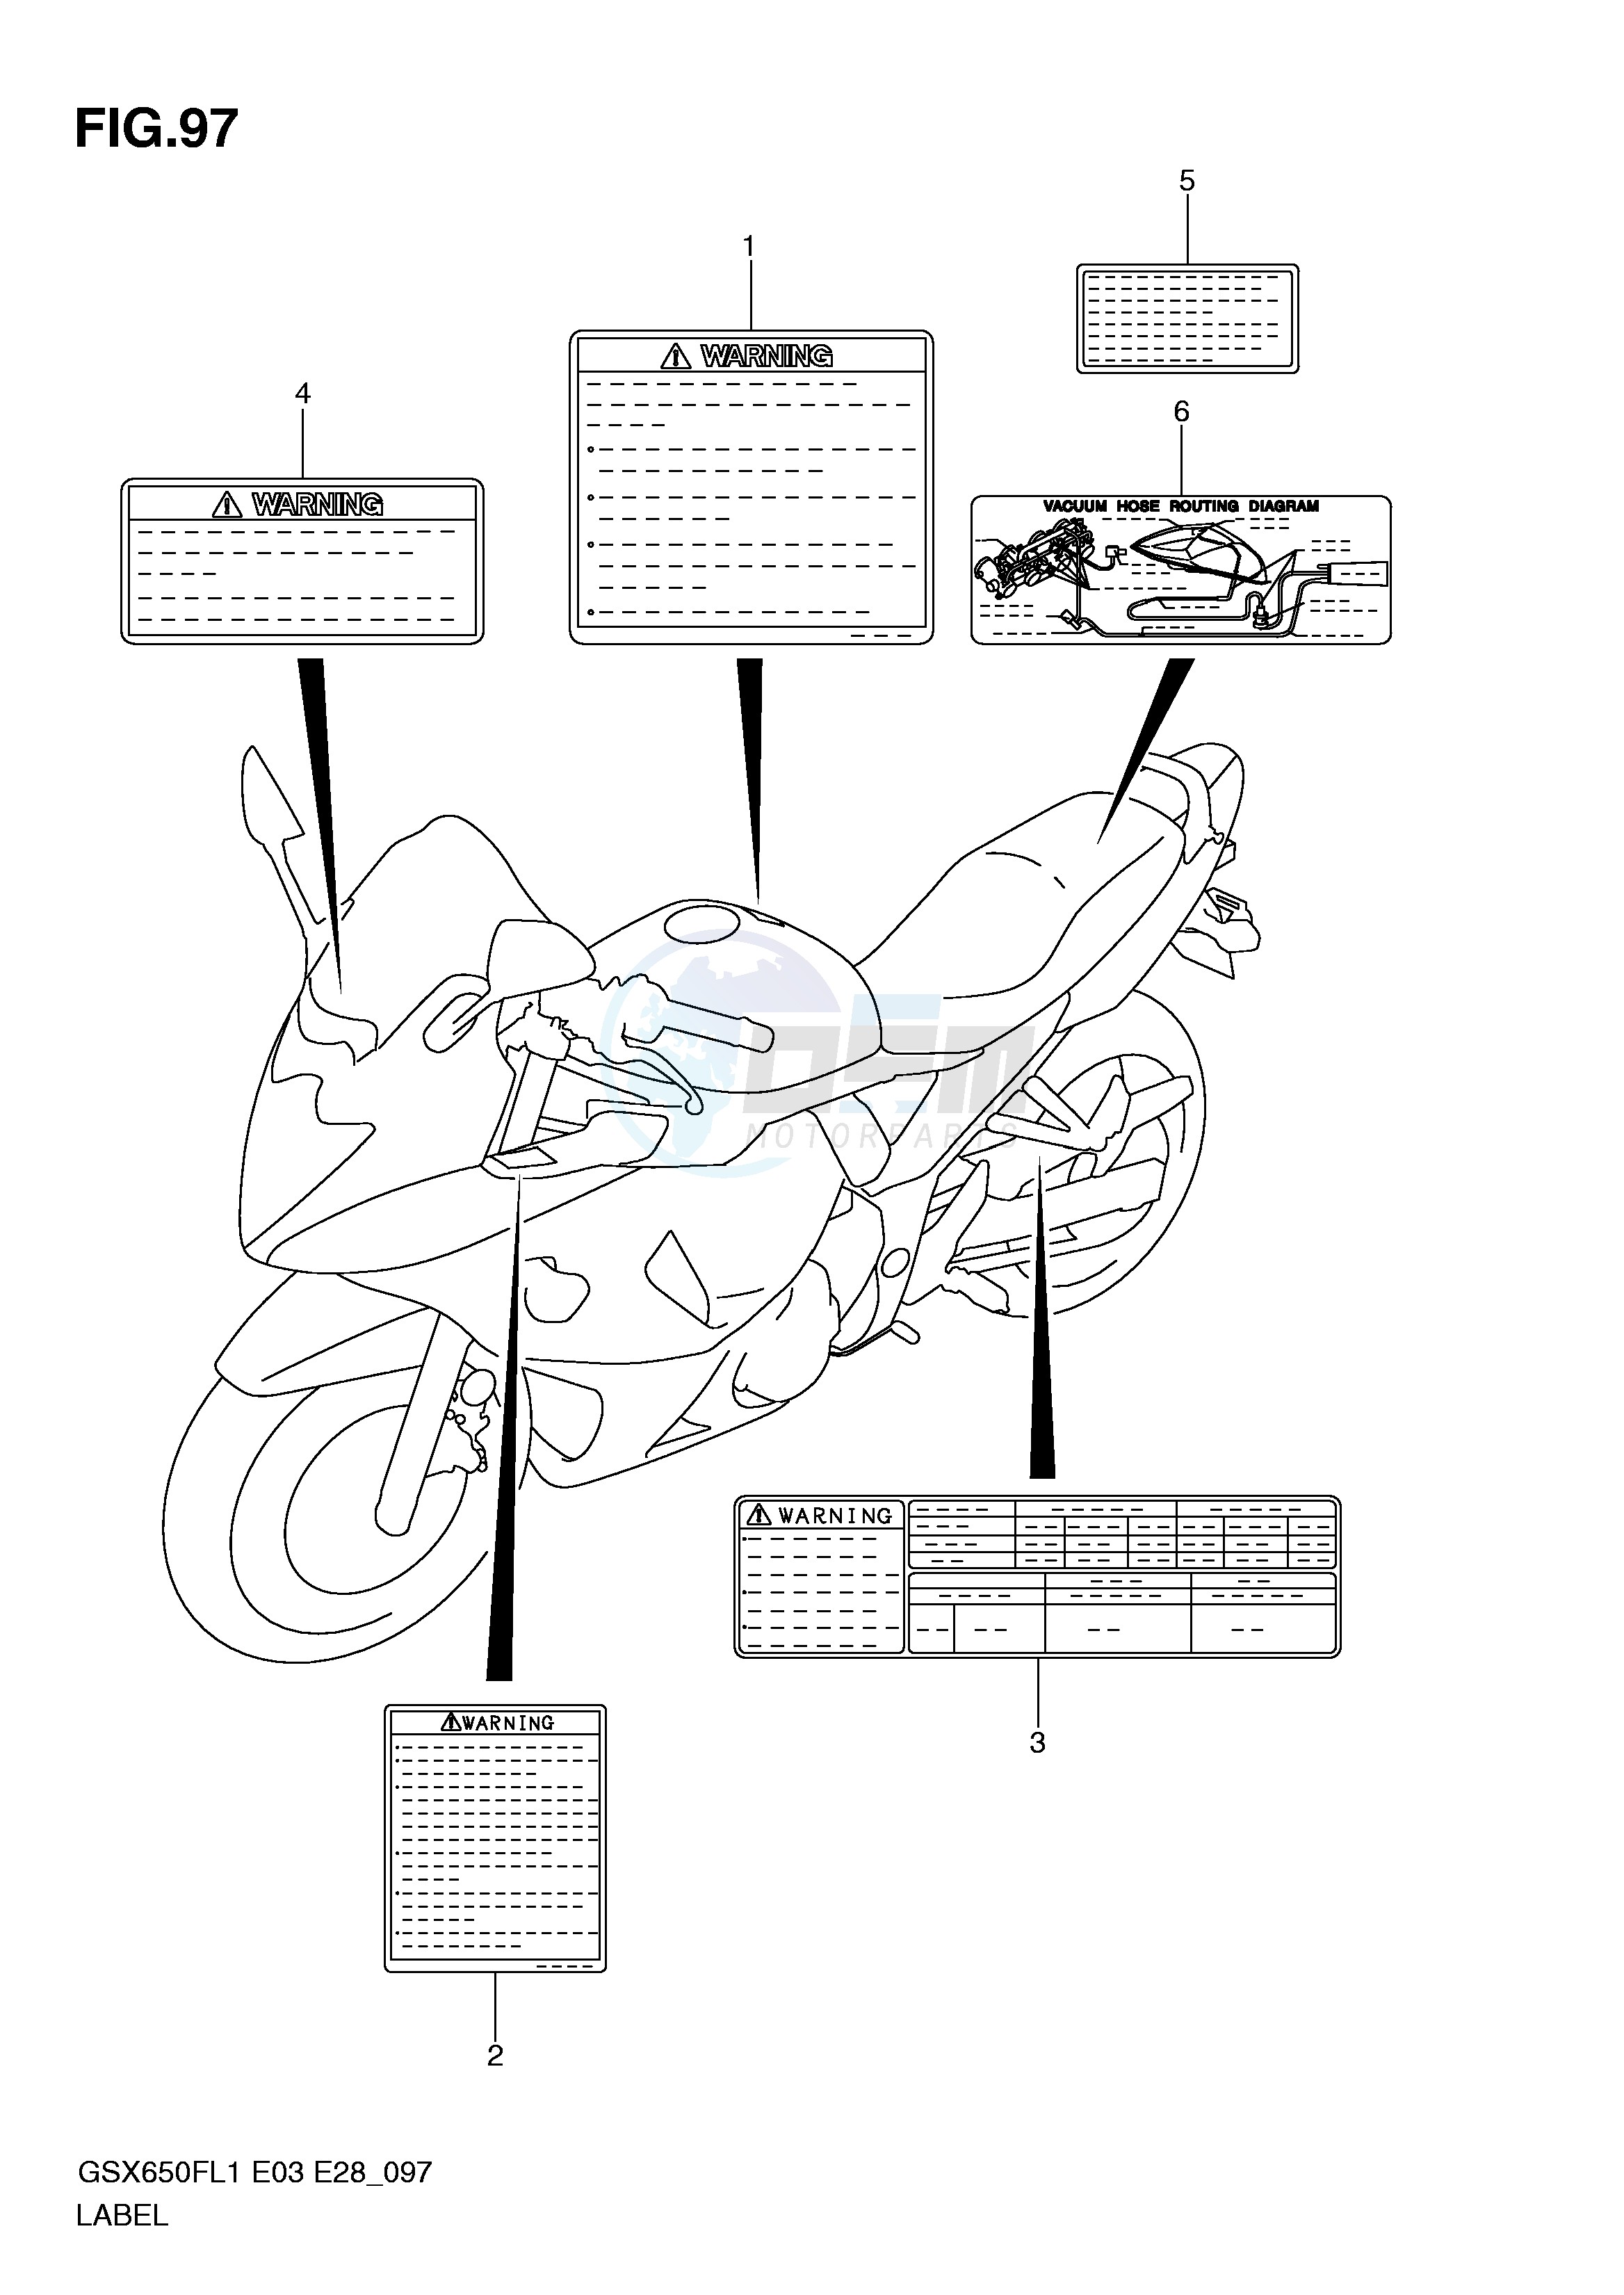 LABEL (GSX650FAL1 E33) blueprint